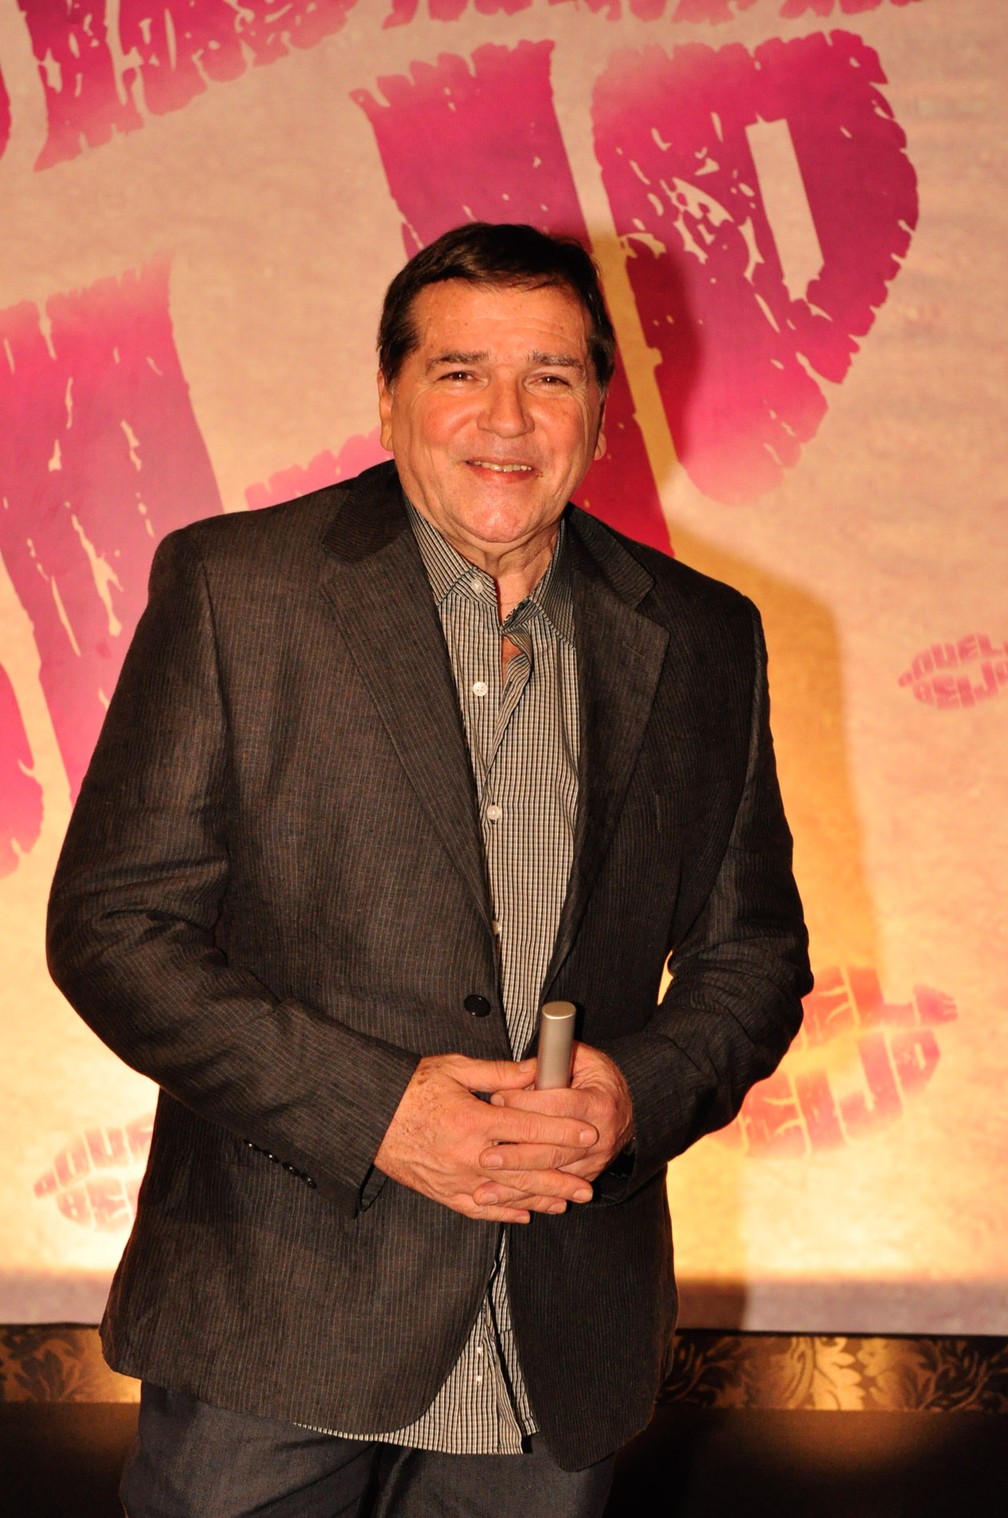 Jerry Adriani durante lançamento da novela 'Aquele beijo' em 11/10/2011 (Foto: TV Globo/Estevam Avellar)